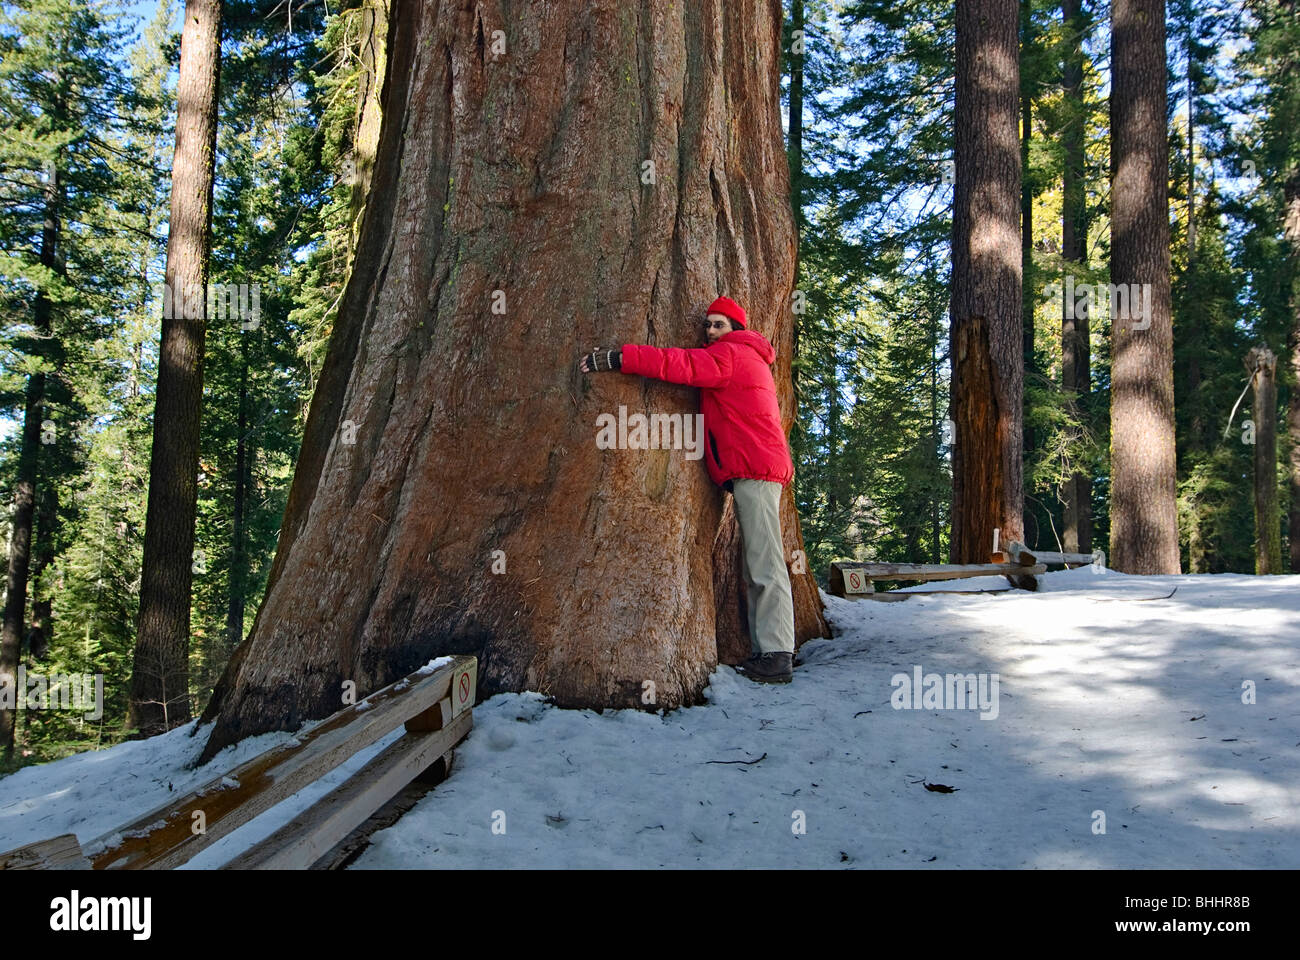 Tree Hugger. Gigantischen Sequoia Bäumen des Tuolumne Grove im Yosemite National Park. Stockfoto